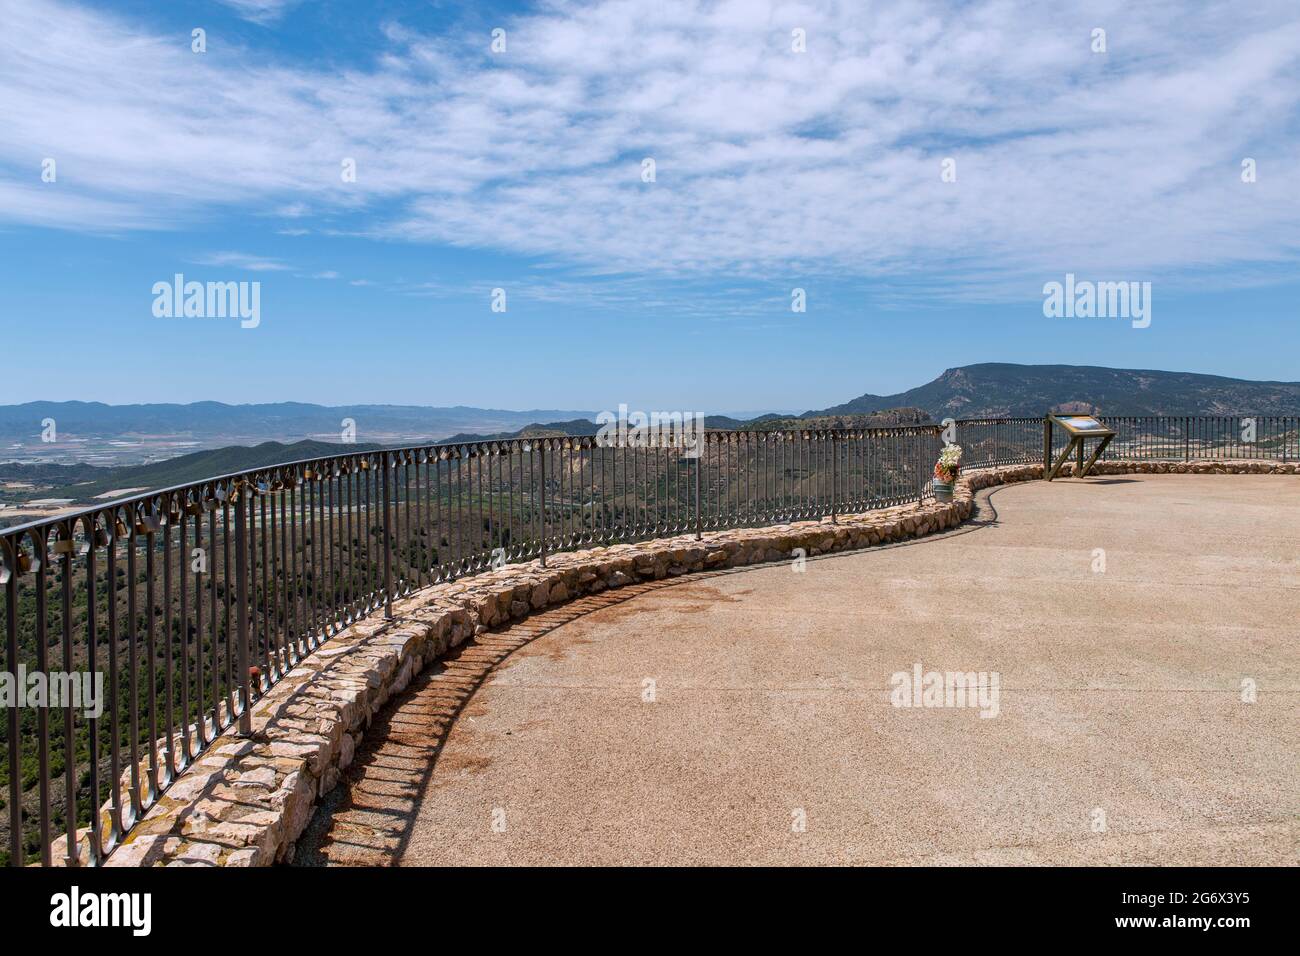 Mirador nannte den Balkon in Totana, Murcia, Spanien, große und espaectaculares Blick über das Tal und Dörfer in der Gegend. Stockfoto